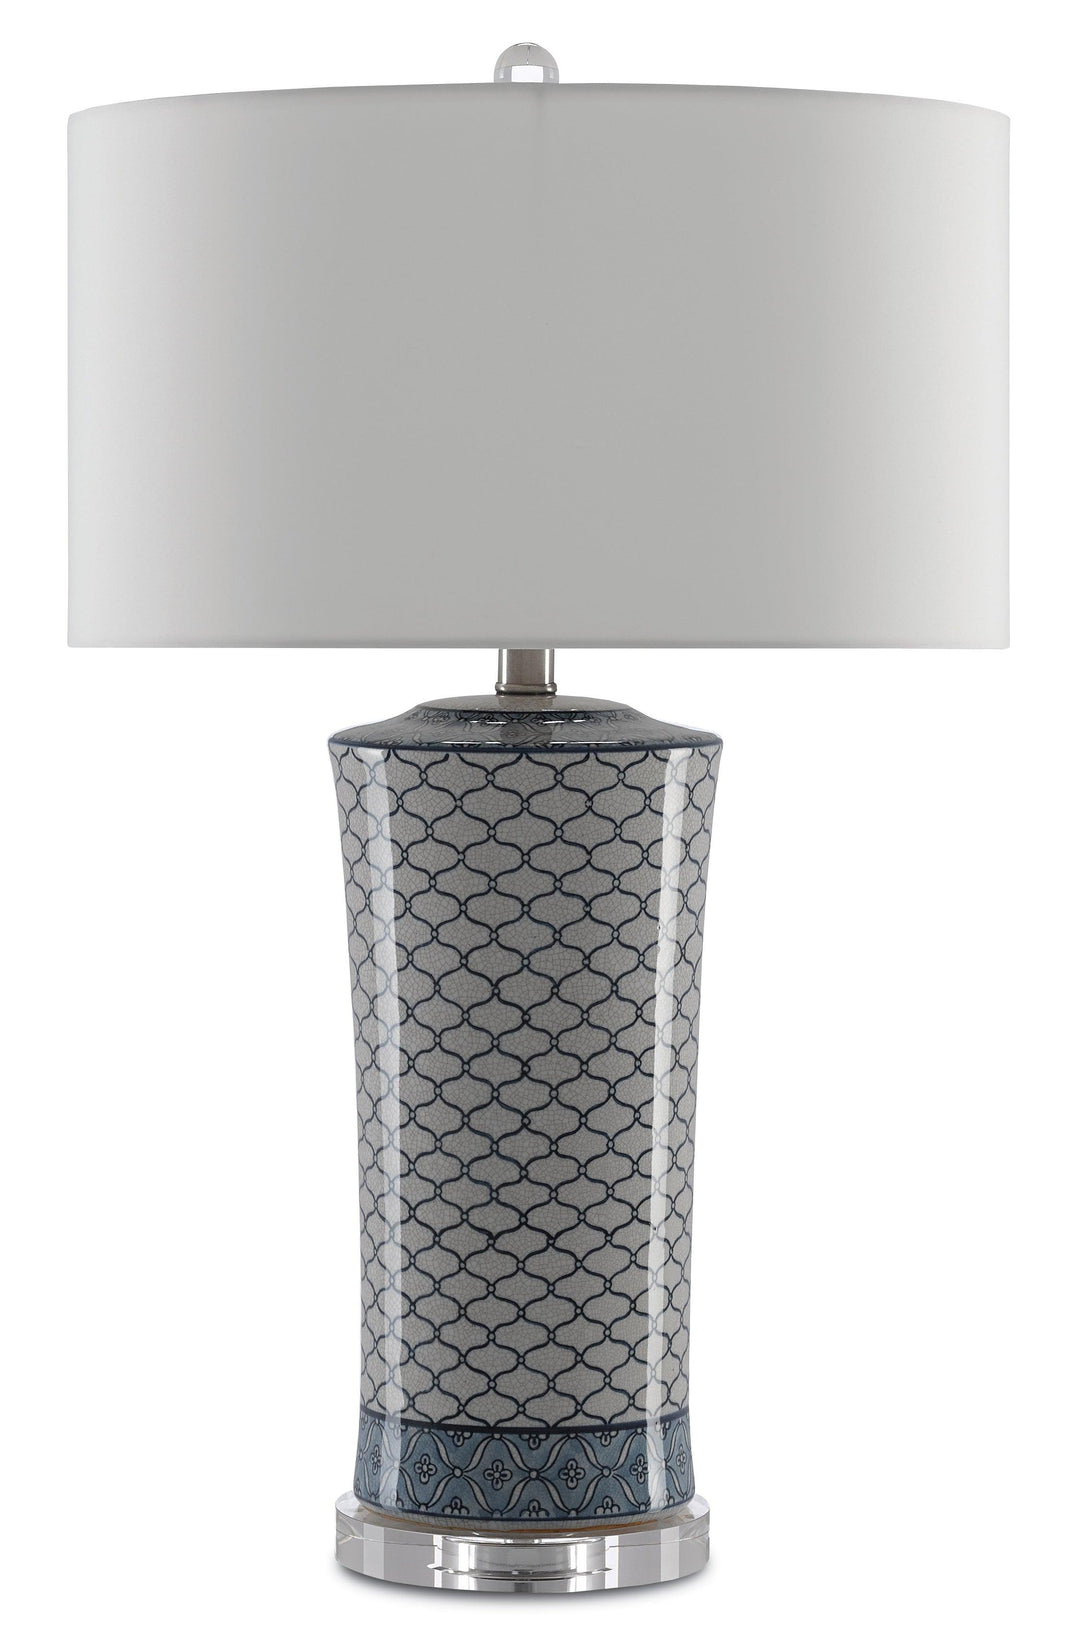 Delft Table Lamp - Casey & Company